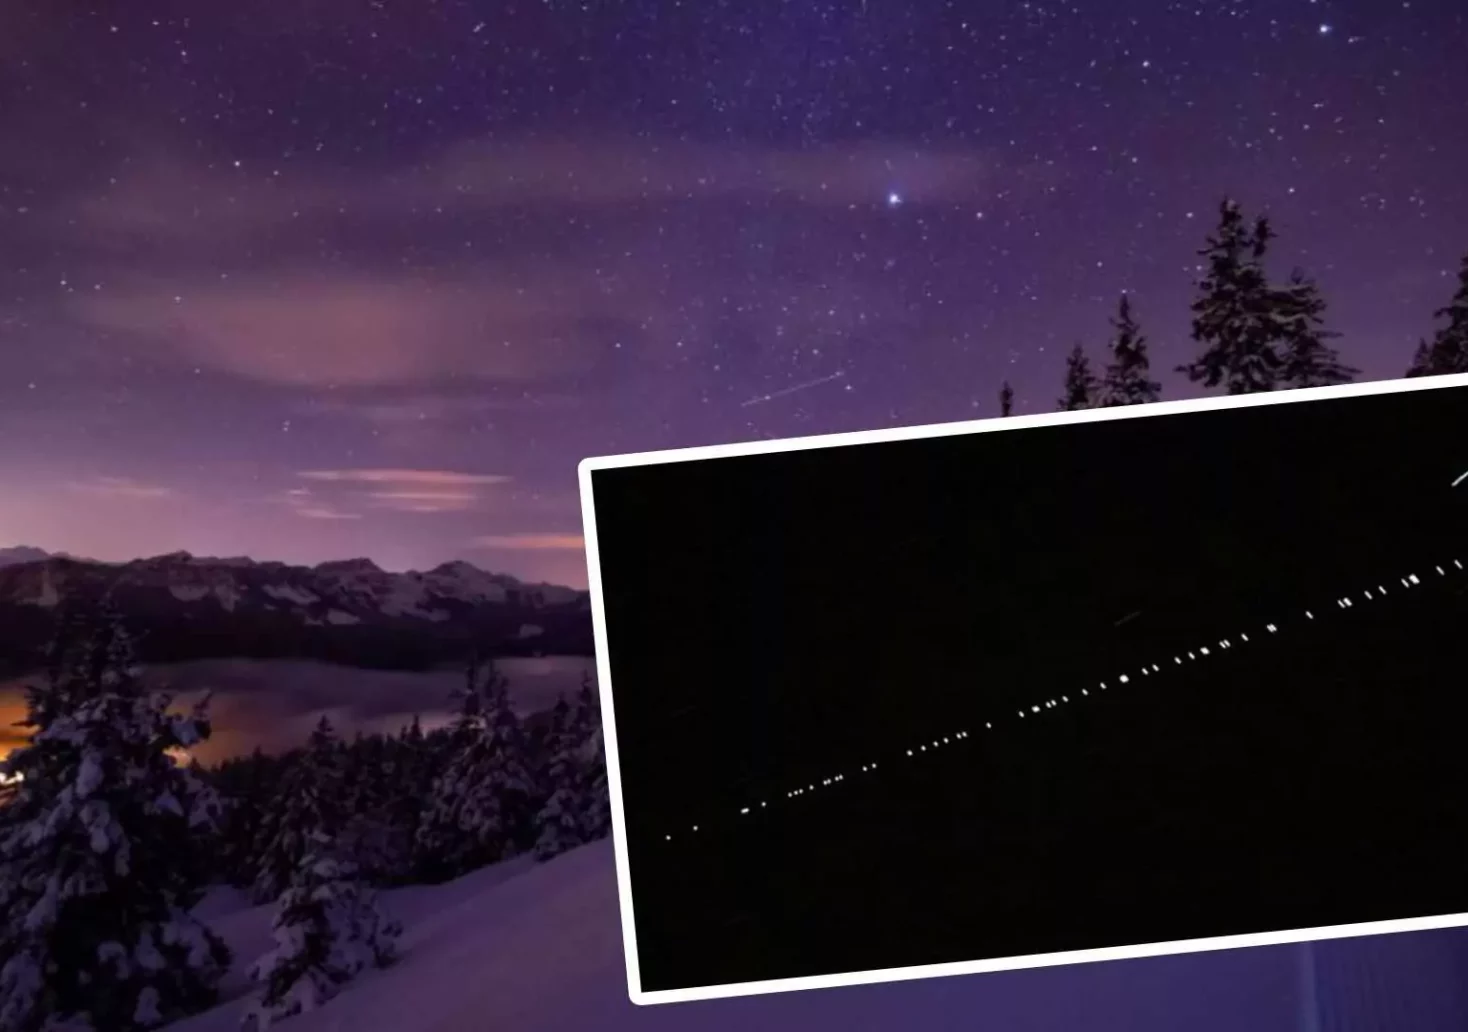 Foto in Beitrag von 5min.at: Zu sehen sind die Starlink-Satelliten auf ein Foto von einem Nachthimmel montiert.